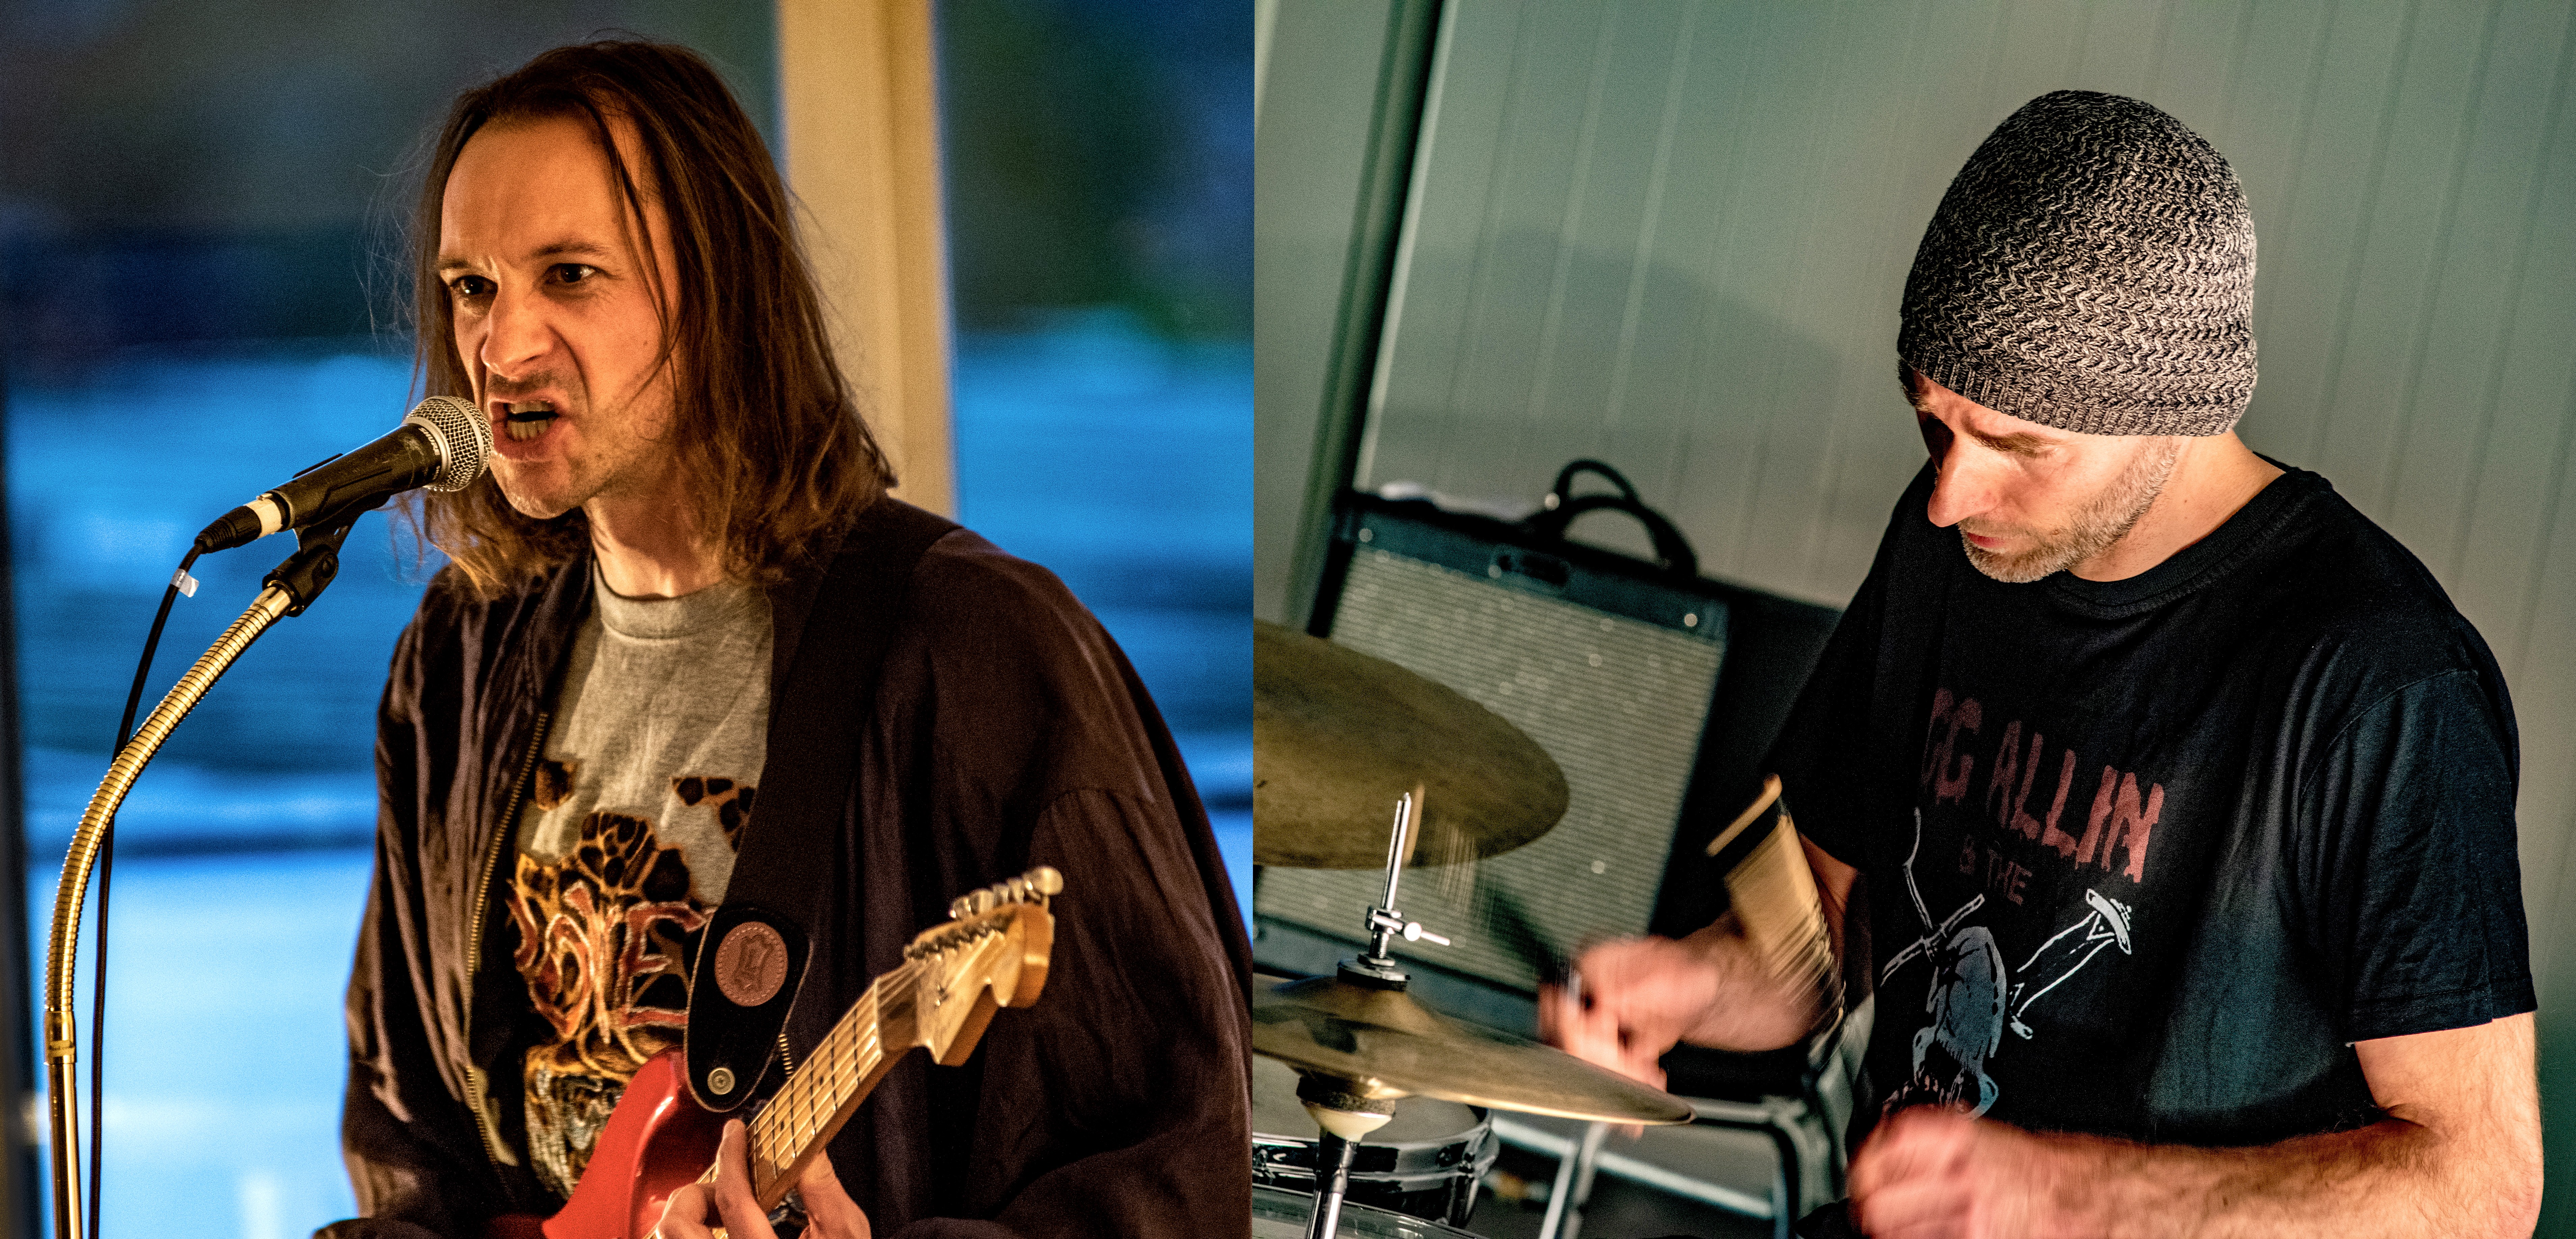 Links im Bild hält eine Person eine Gitarre und singt in ein Mikrofon. Rechts im Bild spielt eine andere Person Schlagzeug.